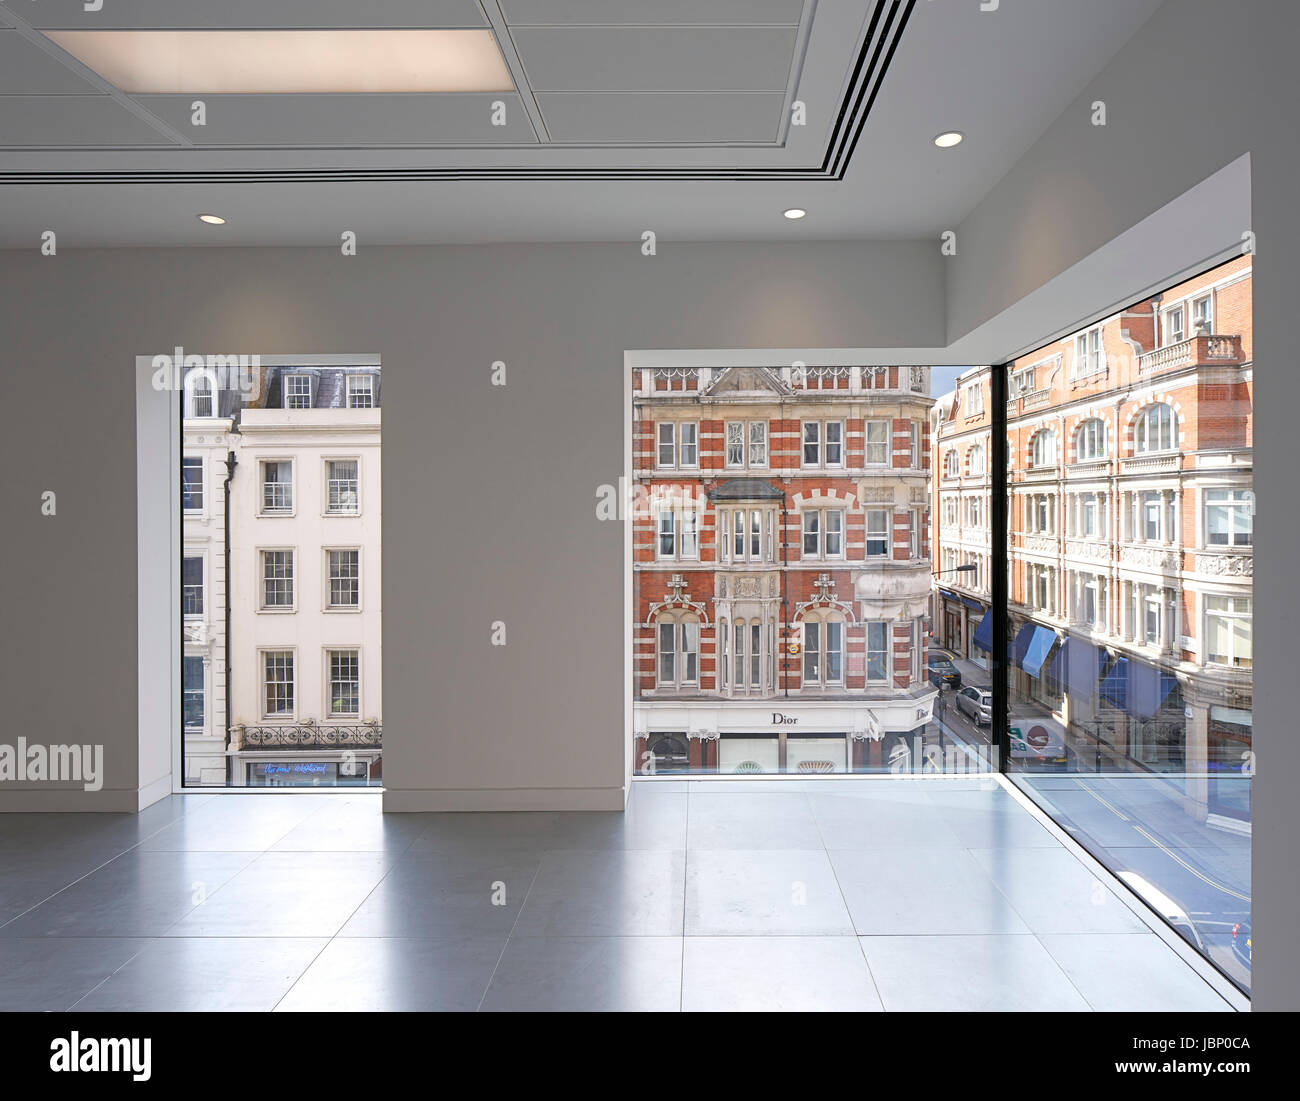 Plaque de sol typique. 24 Saville Row, Londres, Royaume-Uni. Architecte : EPR Architects Limited, 2017. Banque D'Images